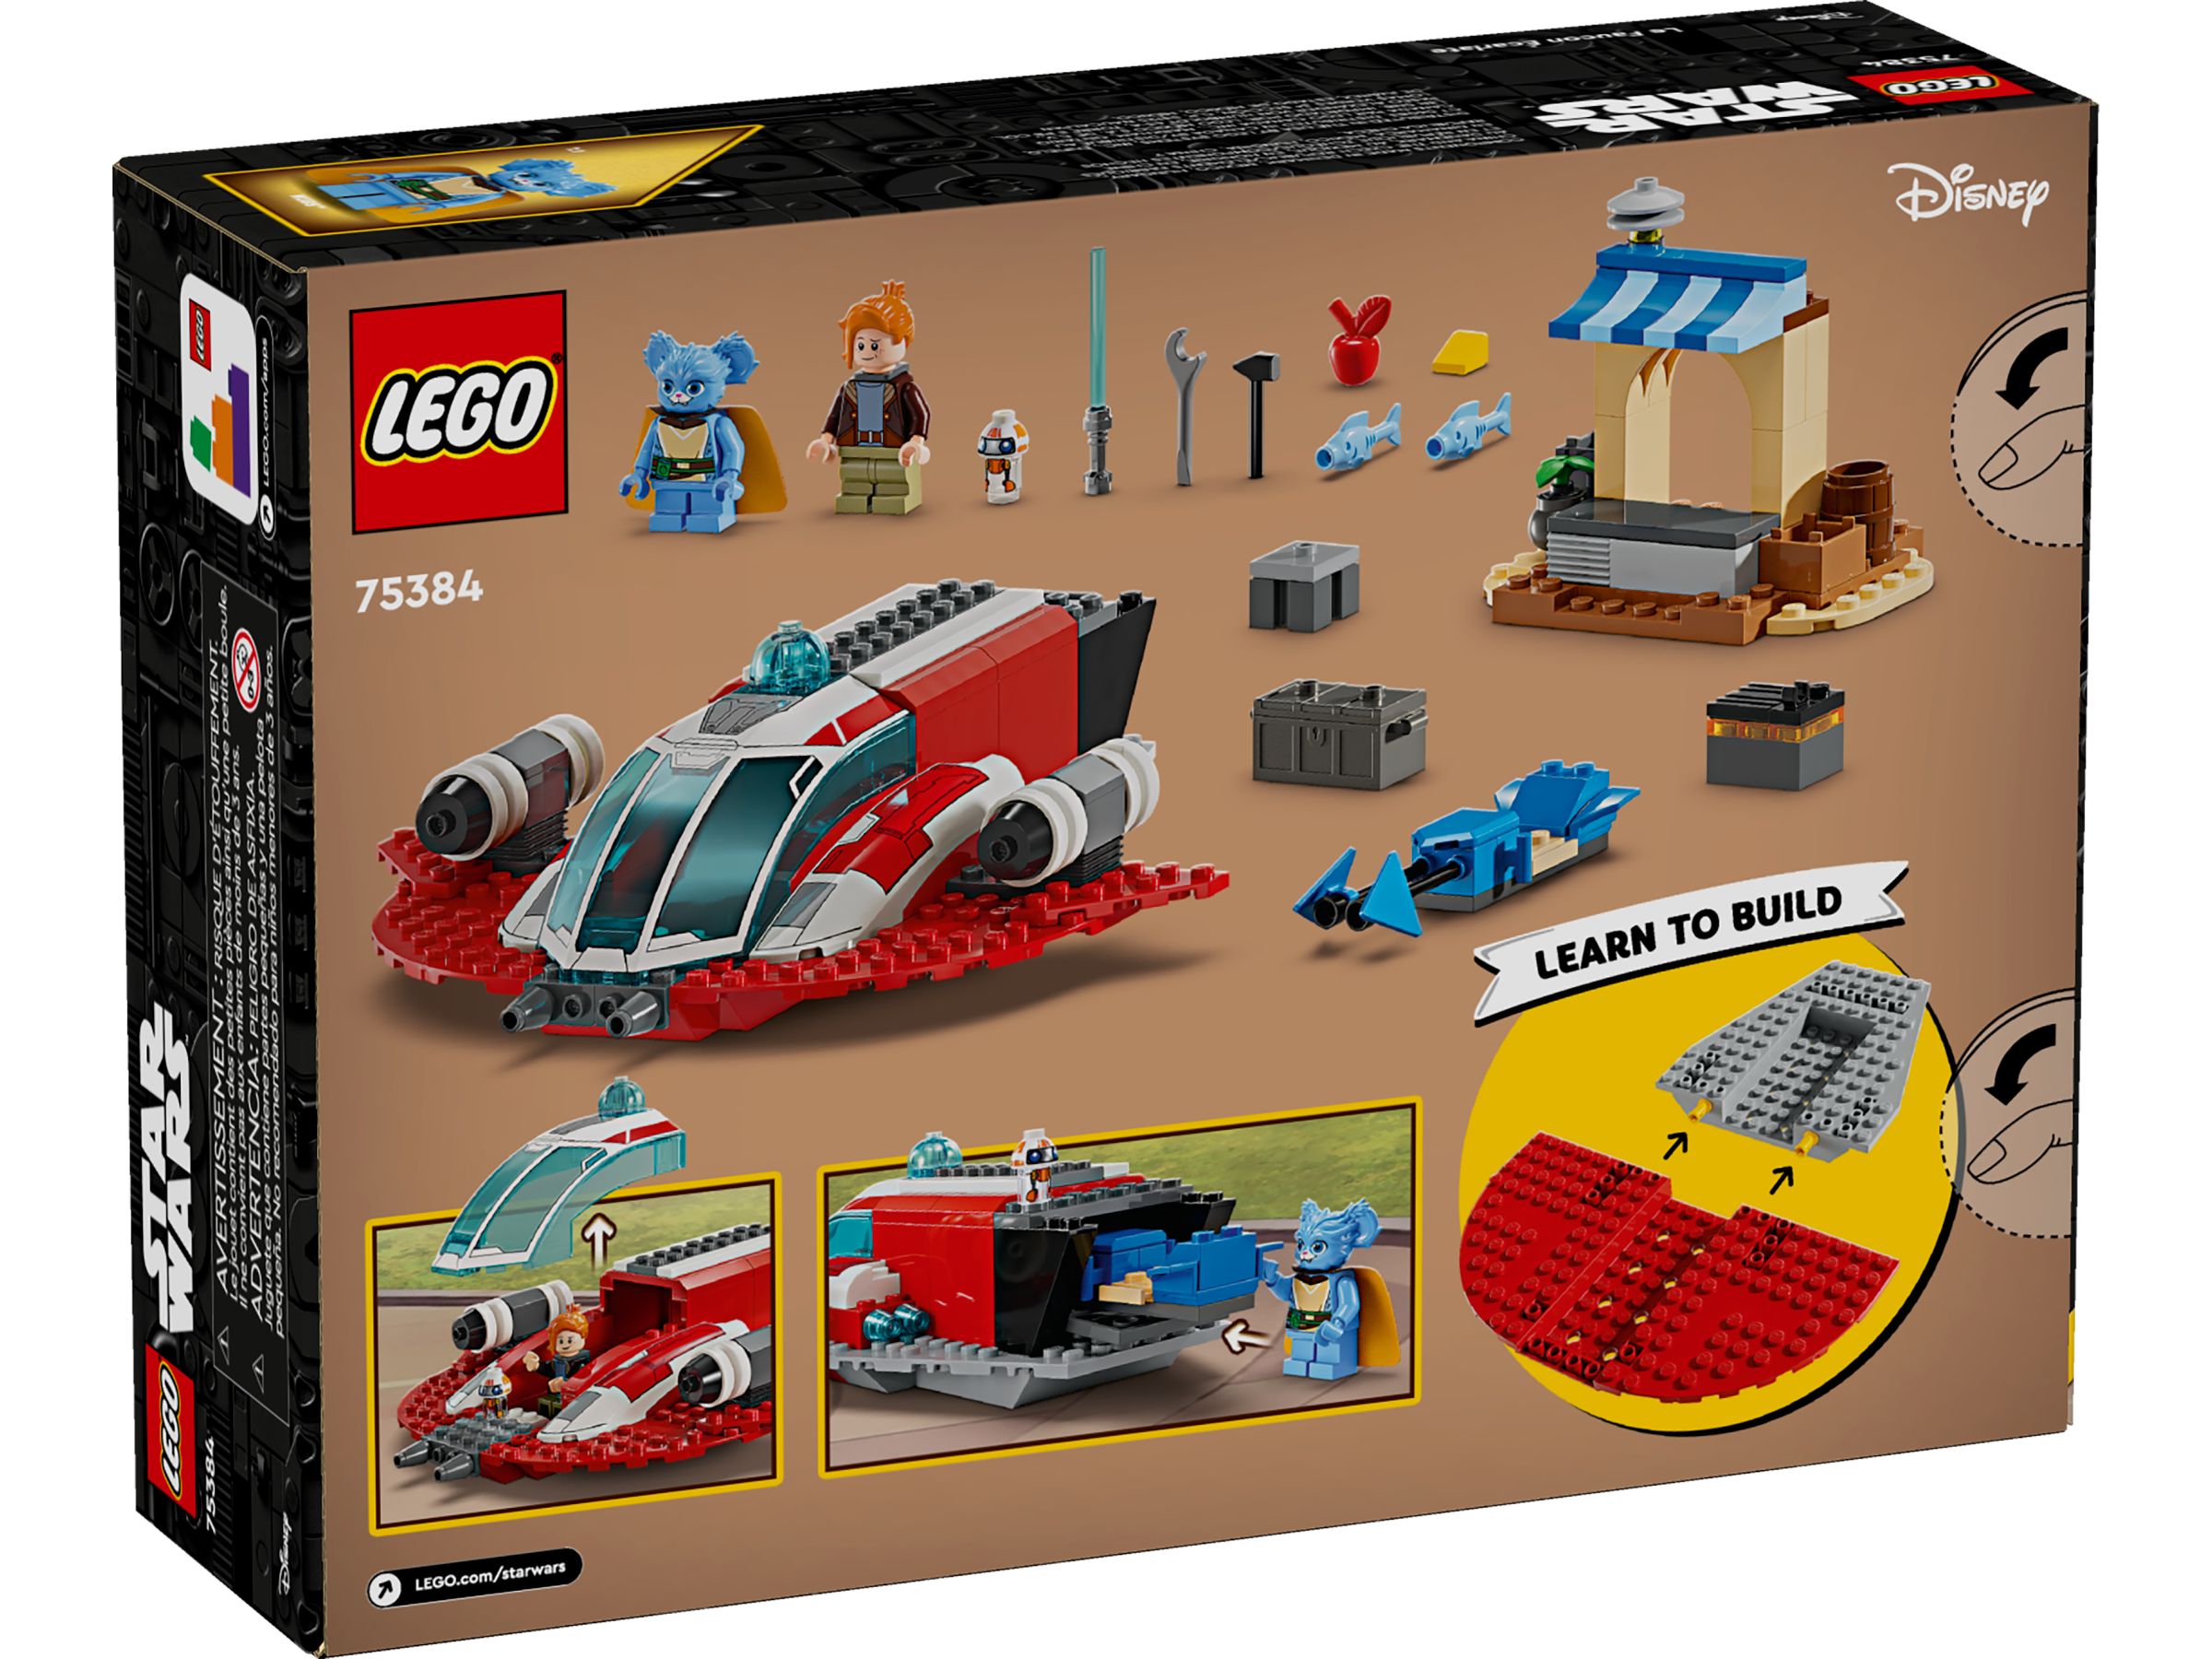 LEGO Star Wars 75384 Der Crimson Firehawk™ LEGO_75384_Box5_v39.jpg